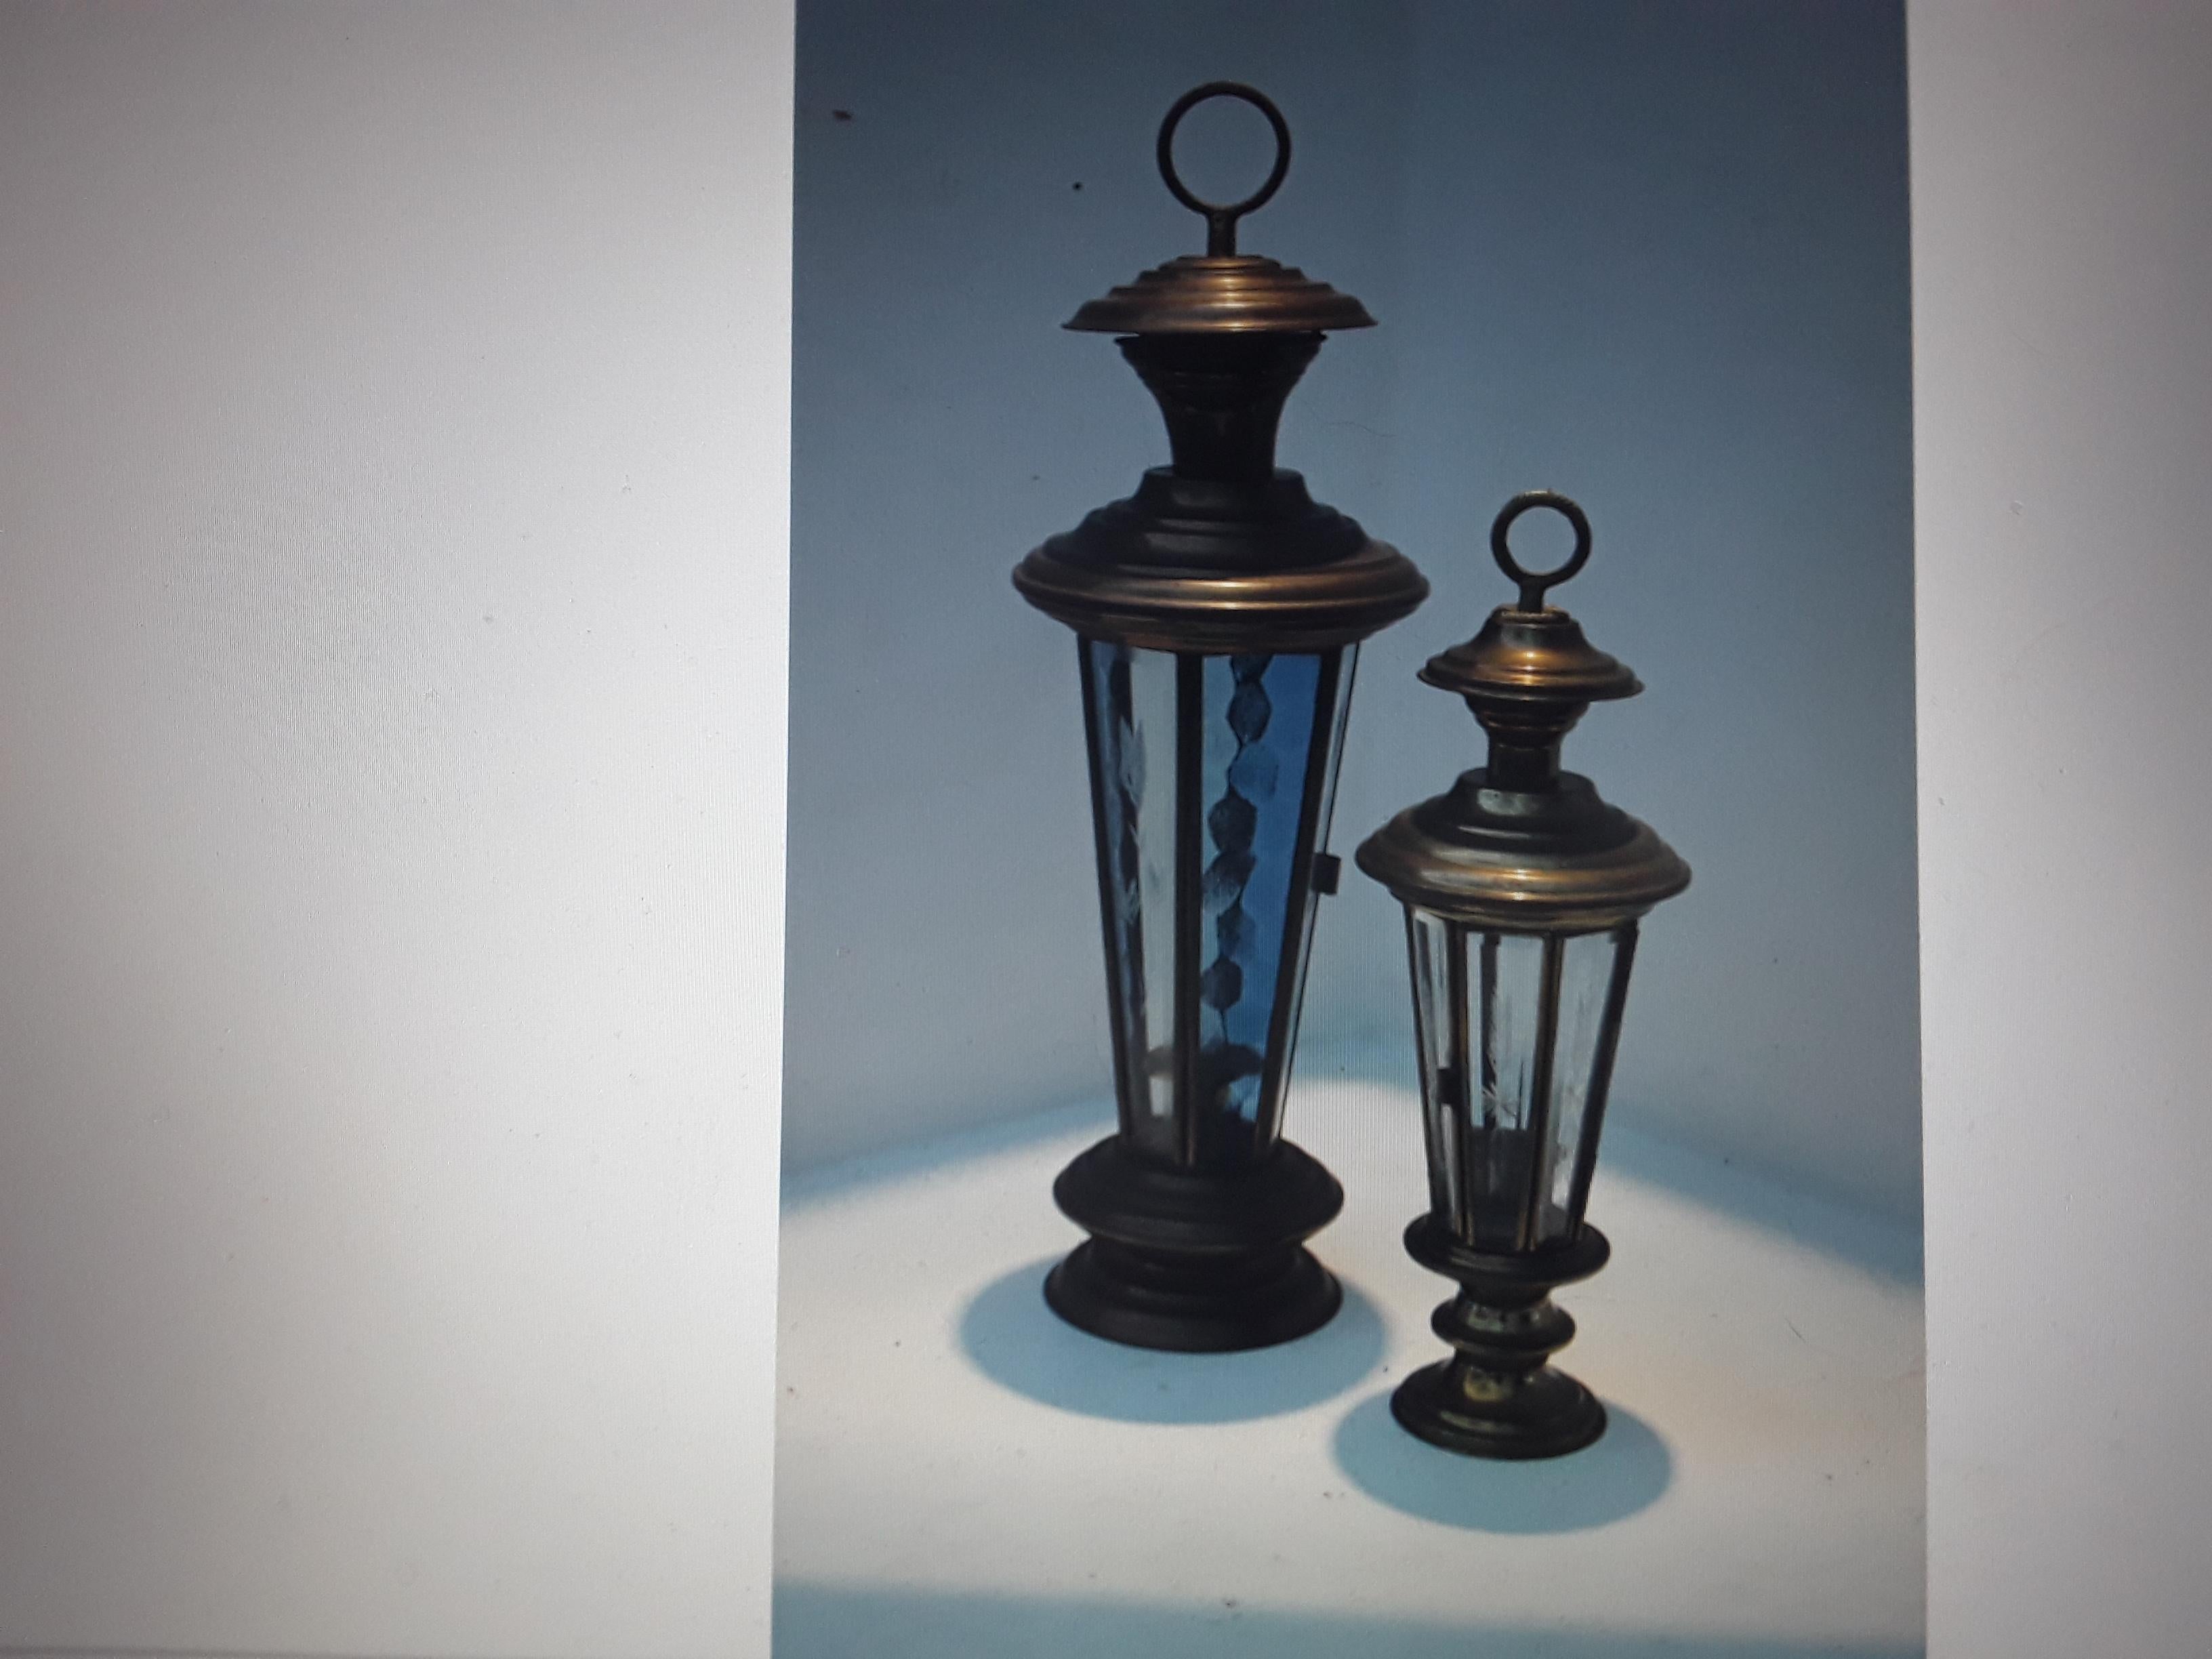 Satz von 2 1960's Vintage Laternen mit Kerzenlicht. Dekorativ und nützlich.